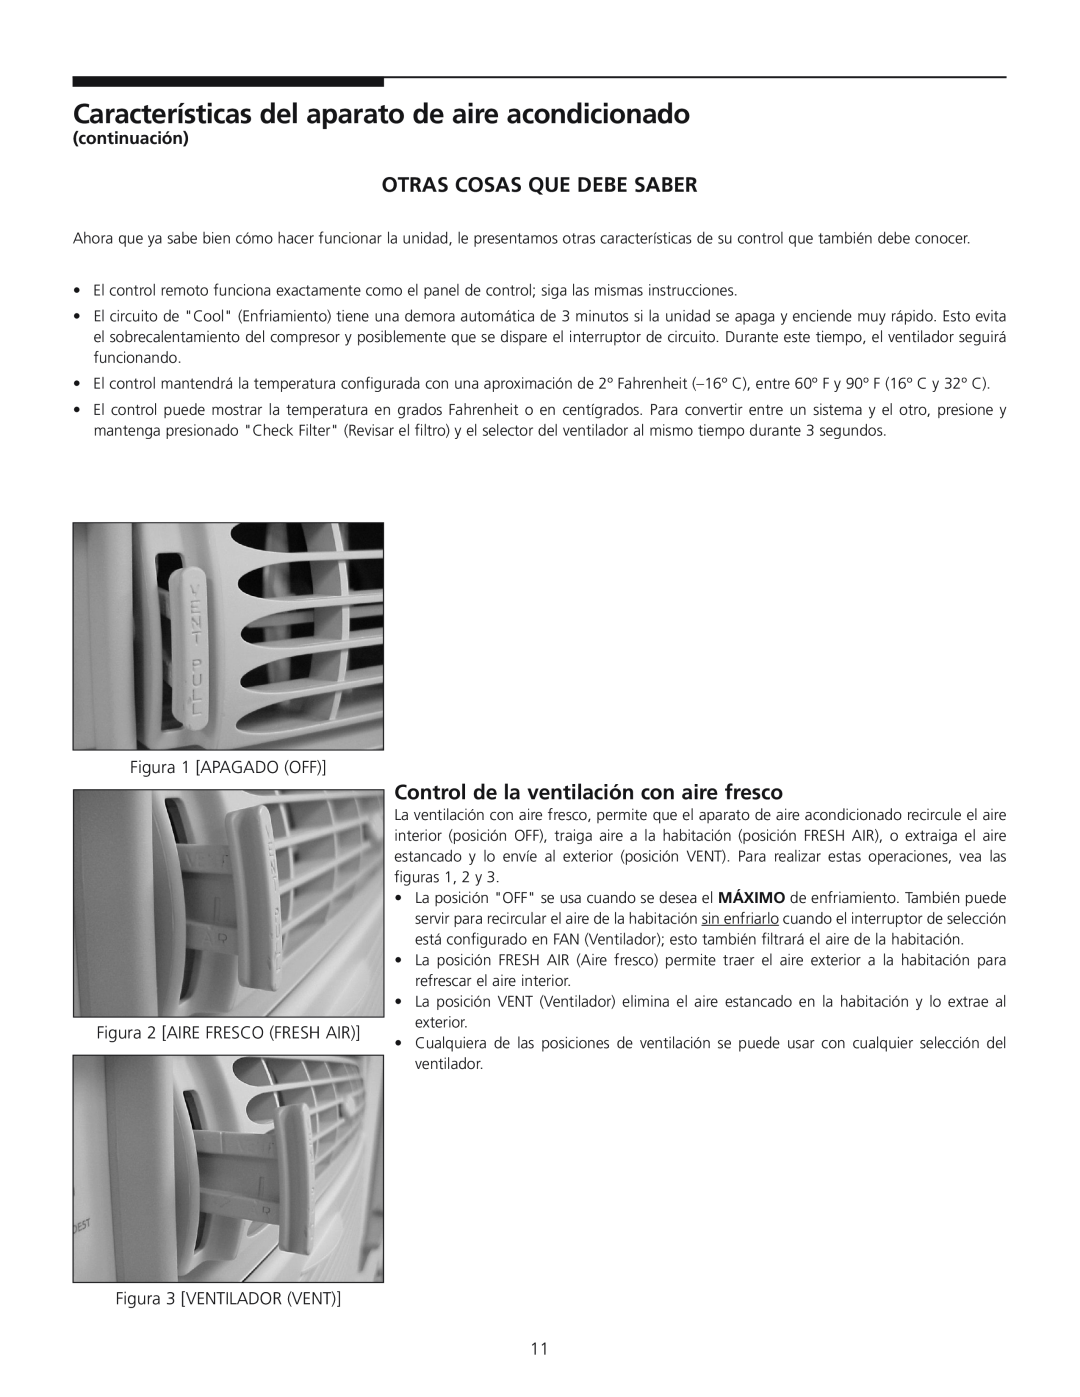 Frigidaire 309000848 manual Otras Cosas Que Debe Saber, Control de la ventilación con aire fresco, continuación 